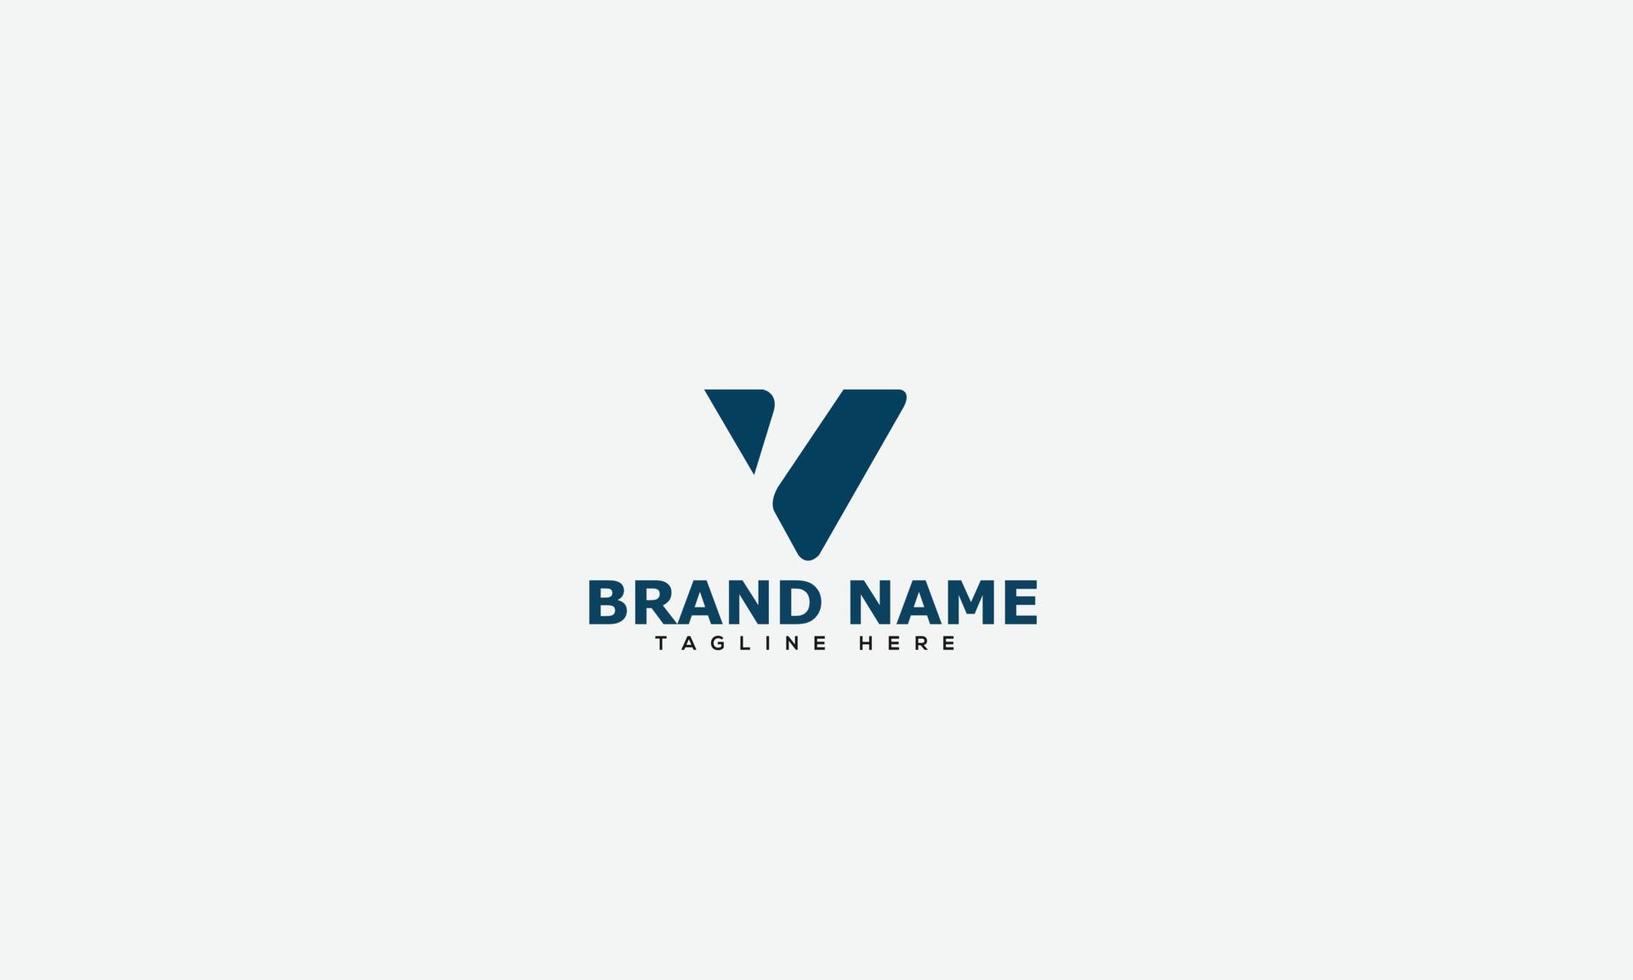 v logo design template elemento di branding grafico vettoriale. vettore